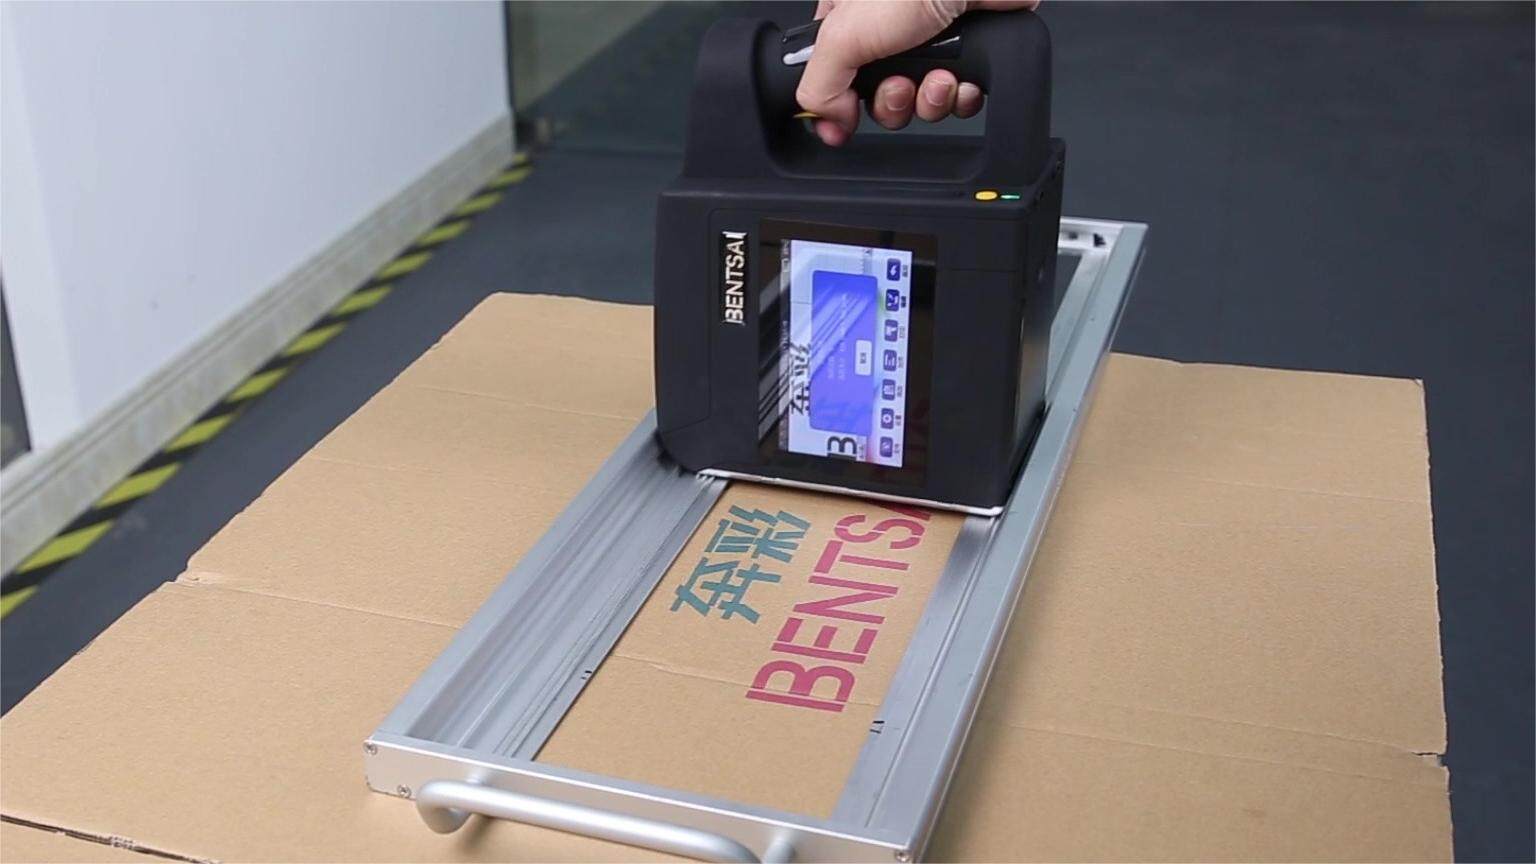 Cardboard printing using Bentsai B80 wide format handheld printer